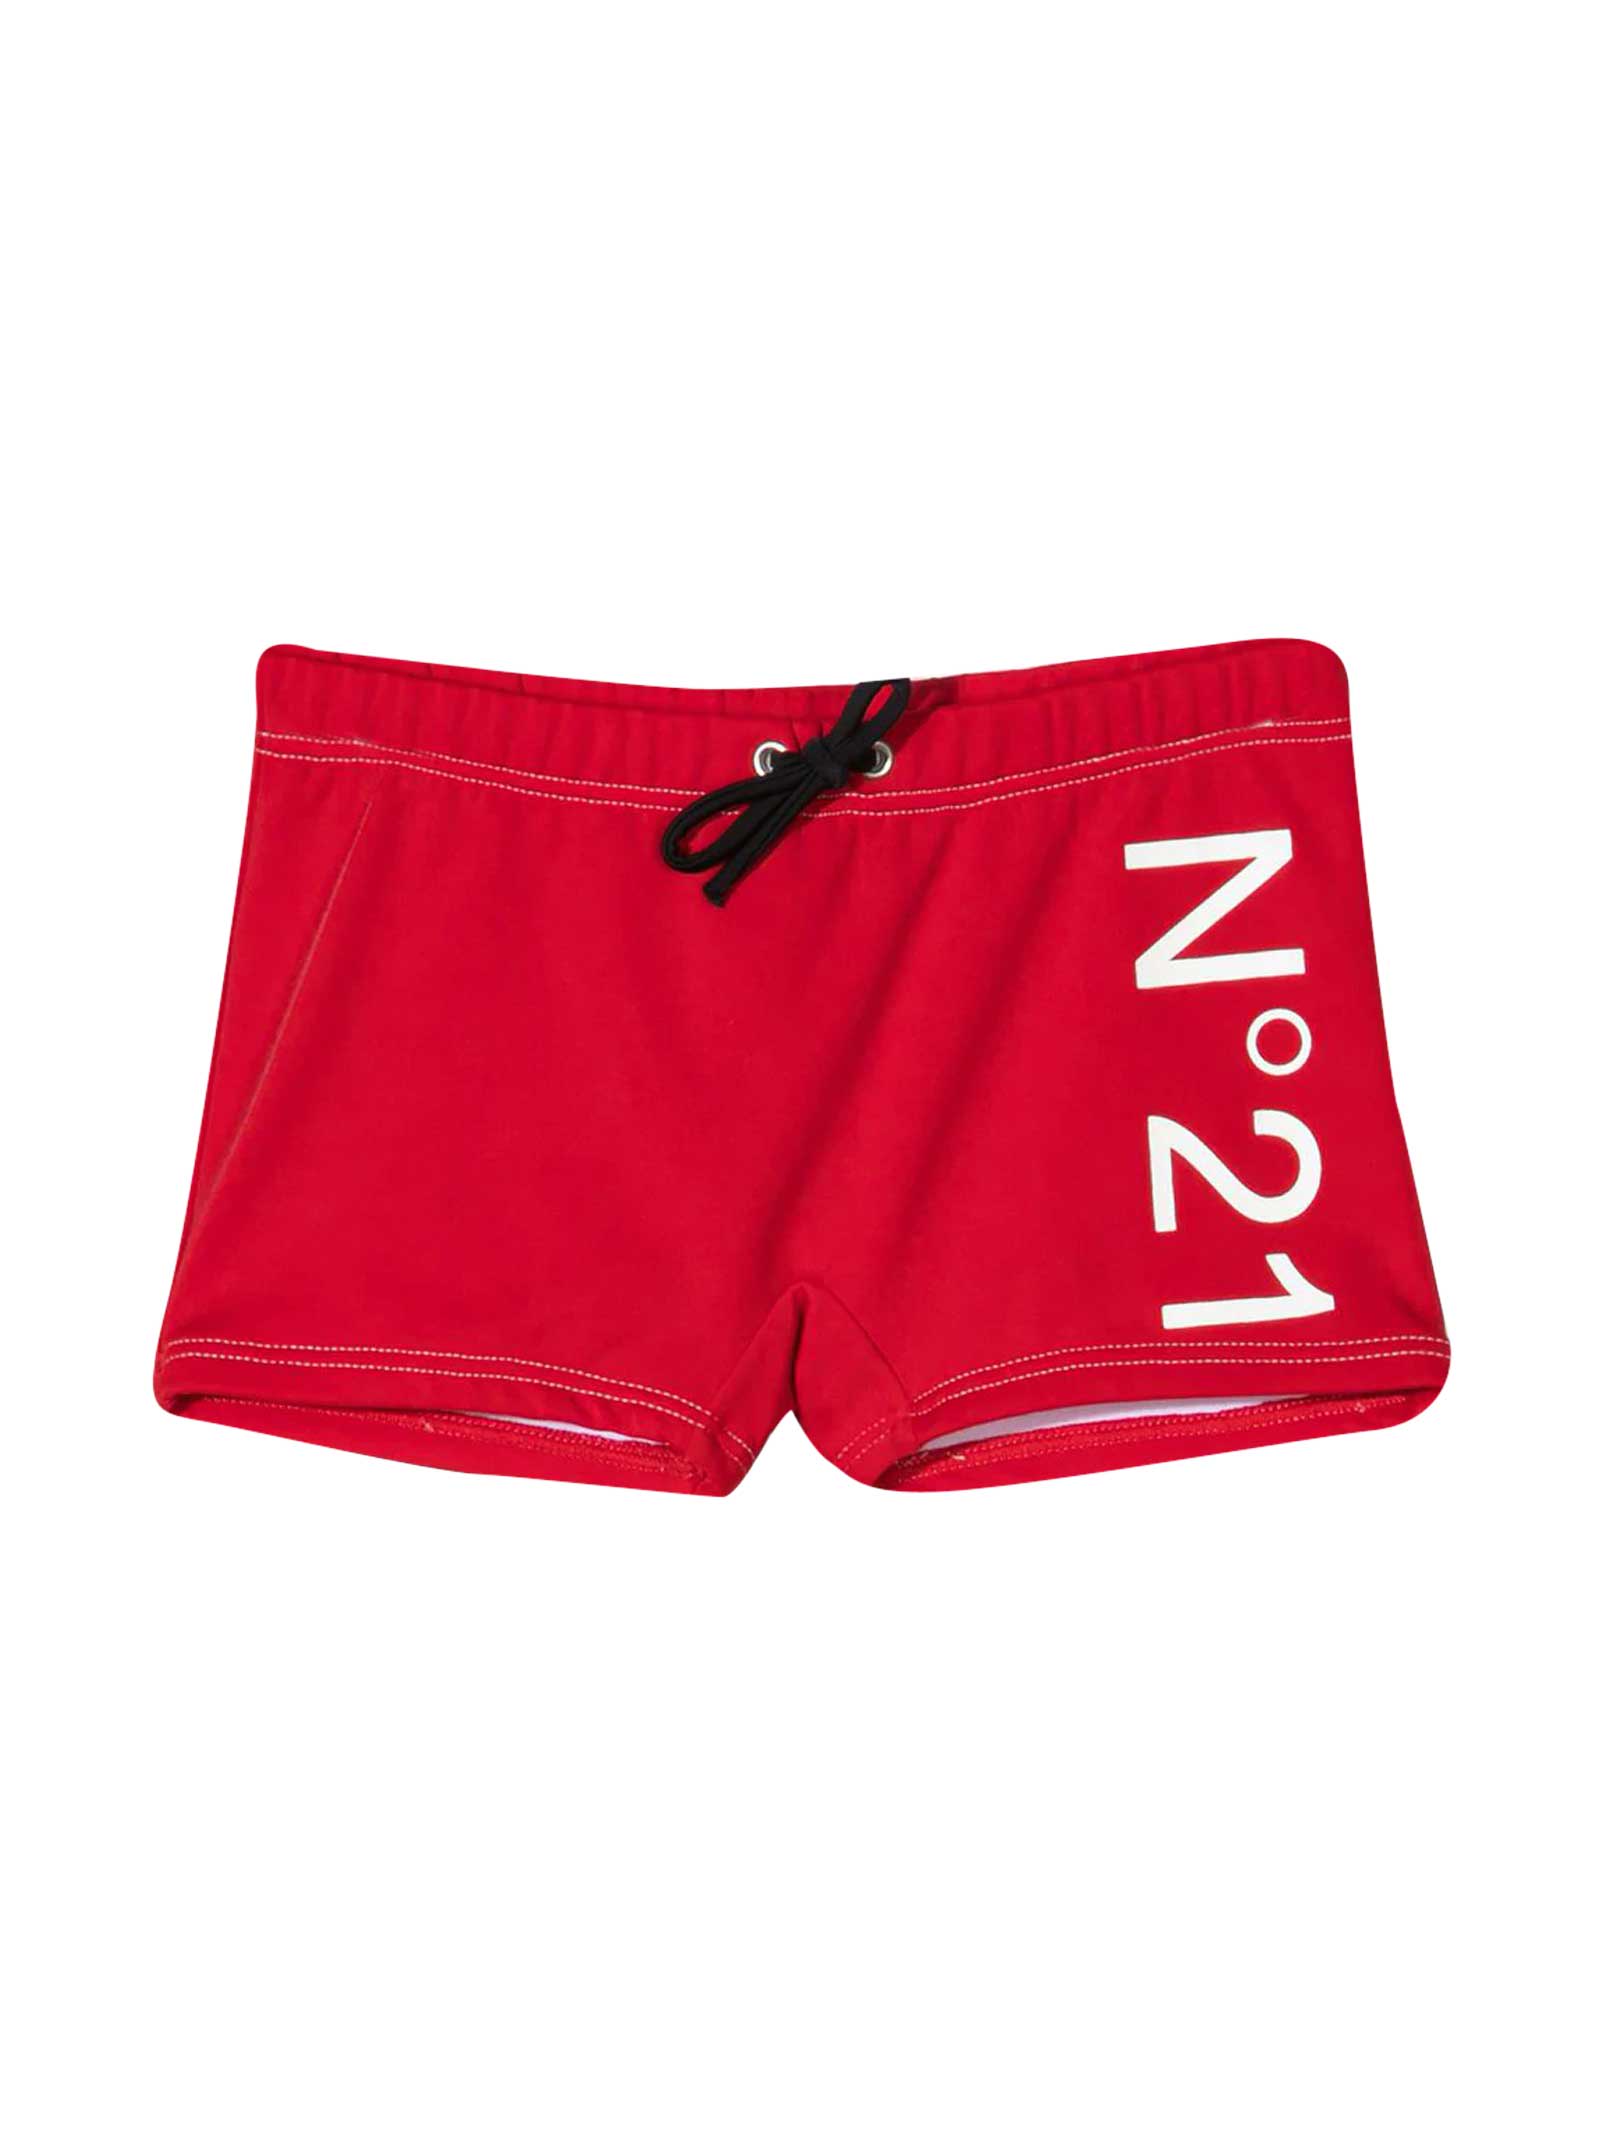 N.21 Red Swimsuit N ° 21 Kids